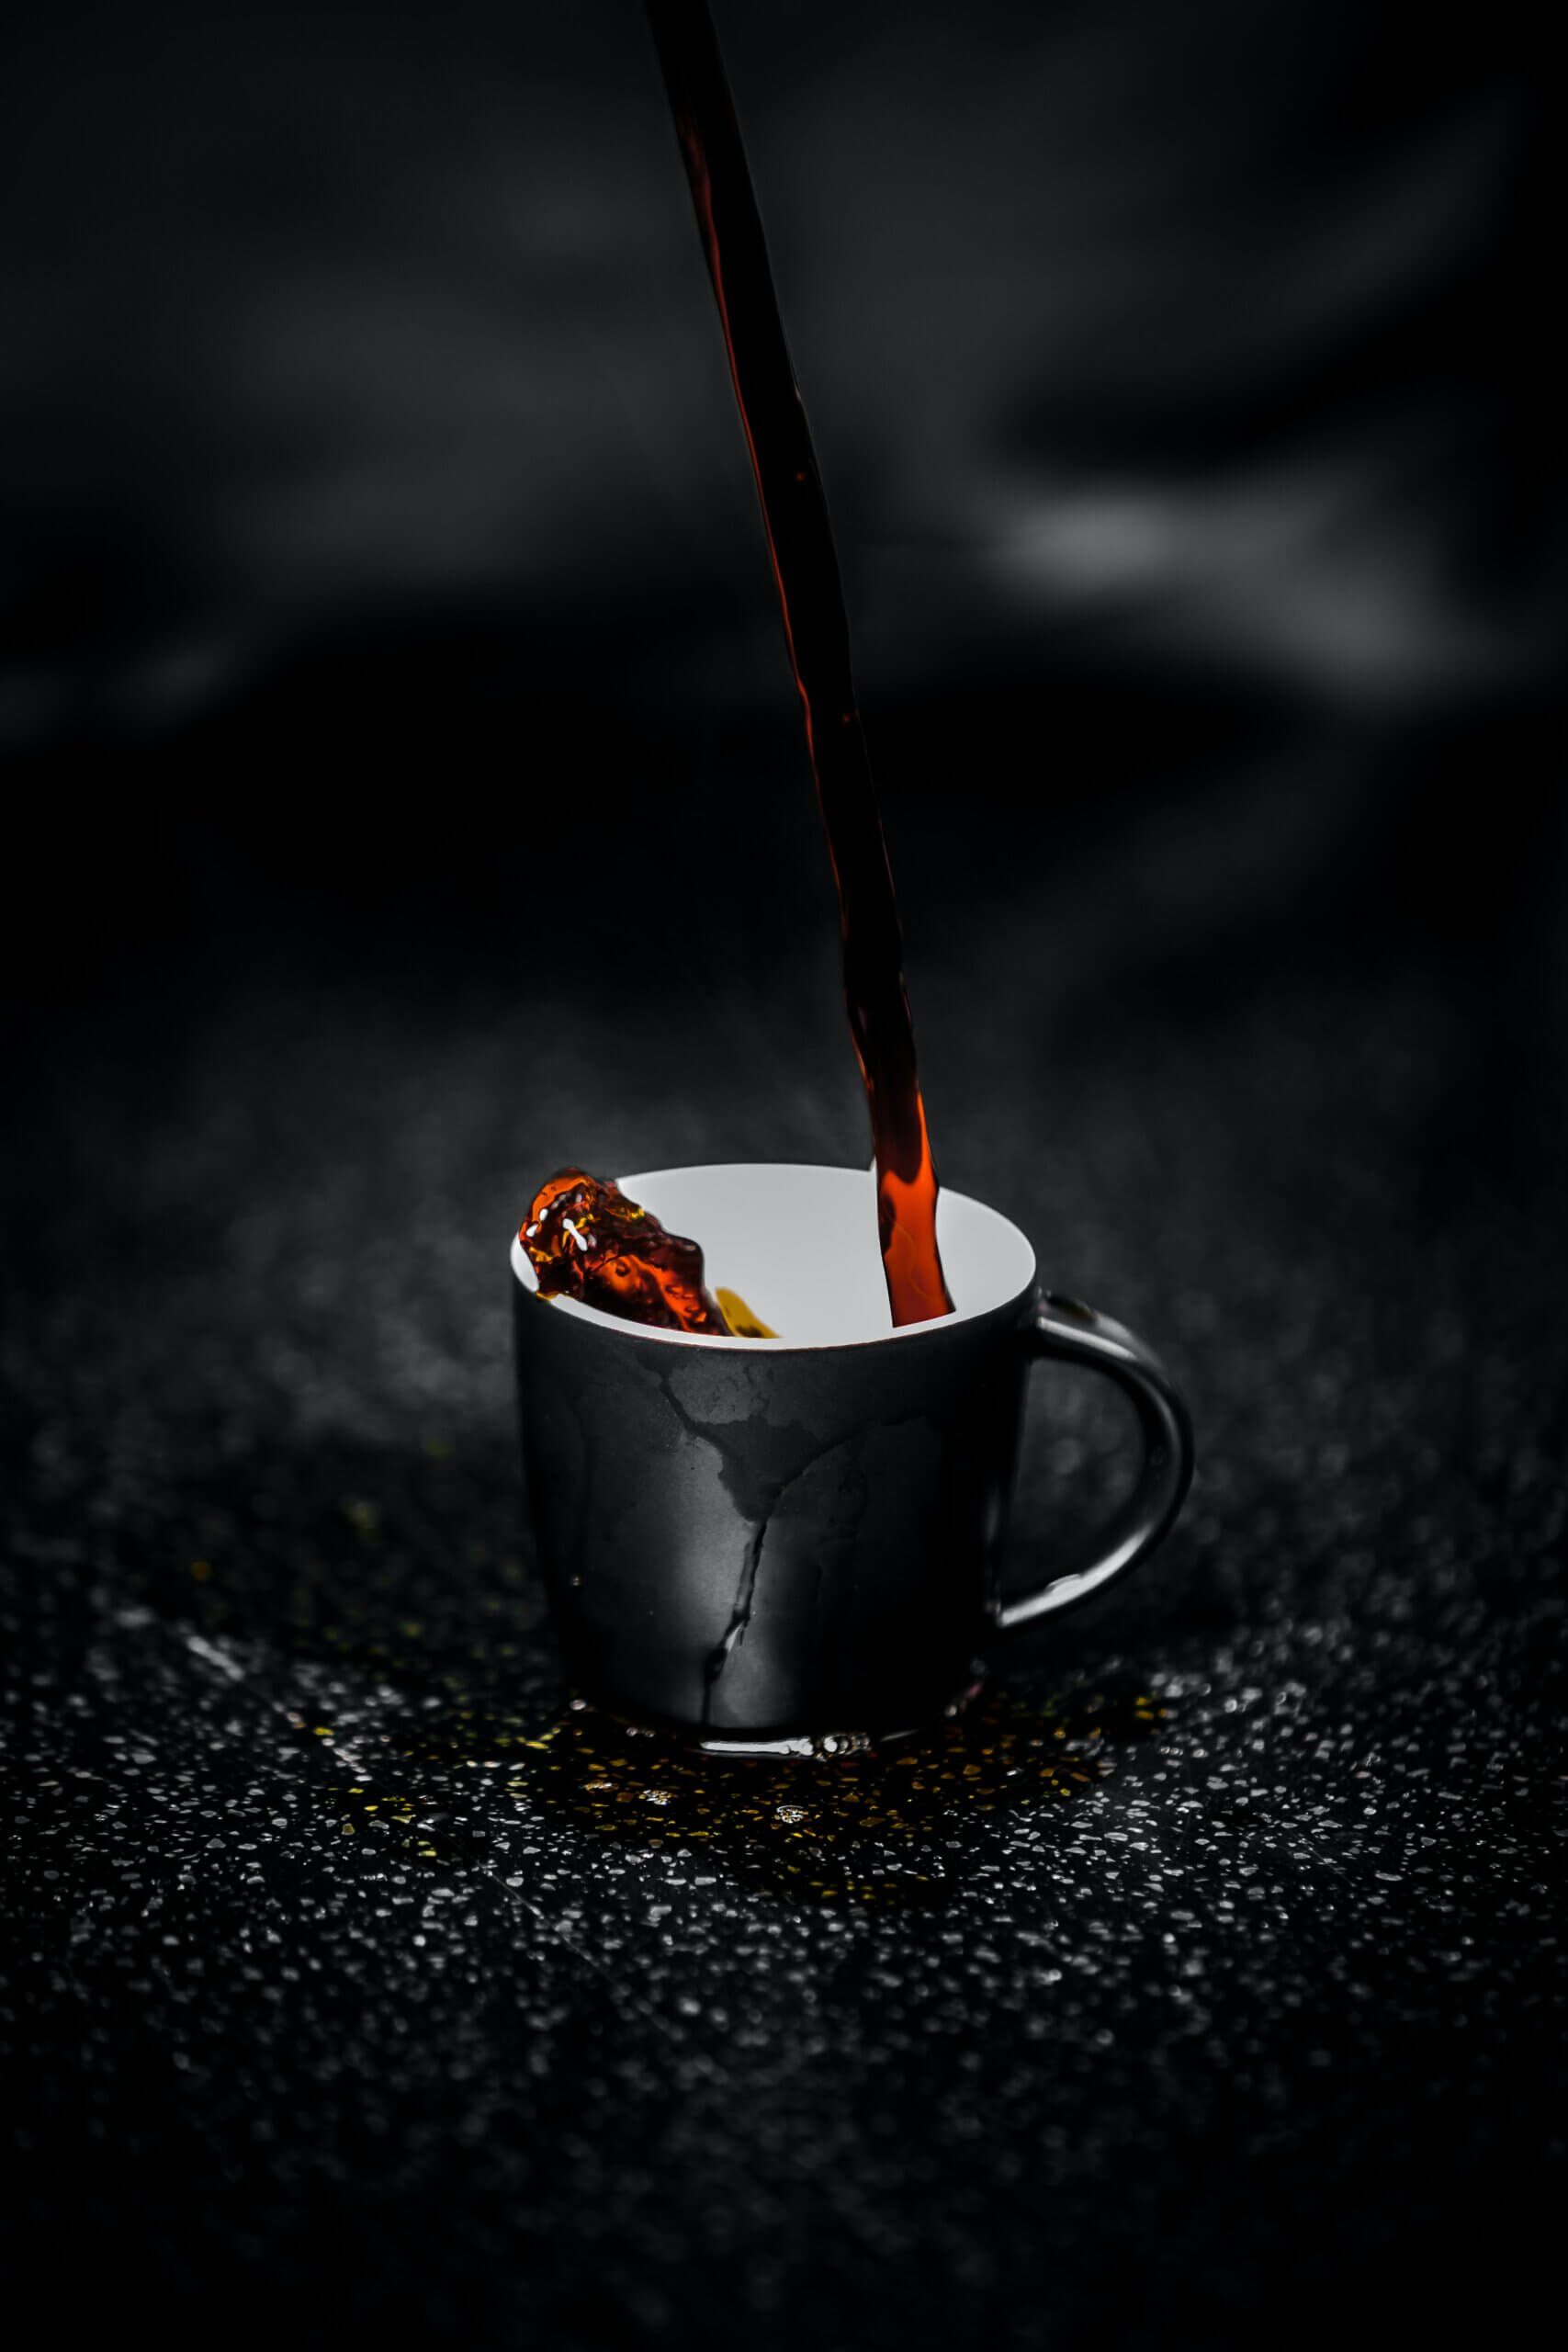 De gezondheidsvoordelen van cafeïne op een rij